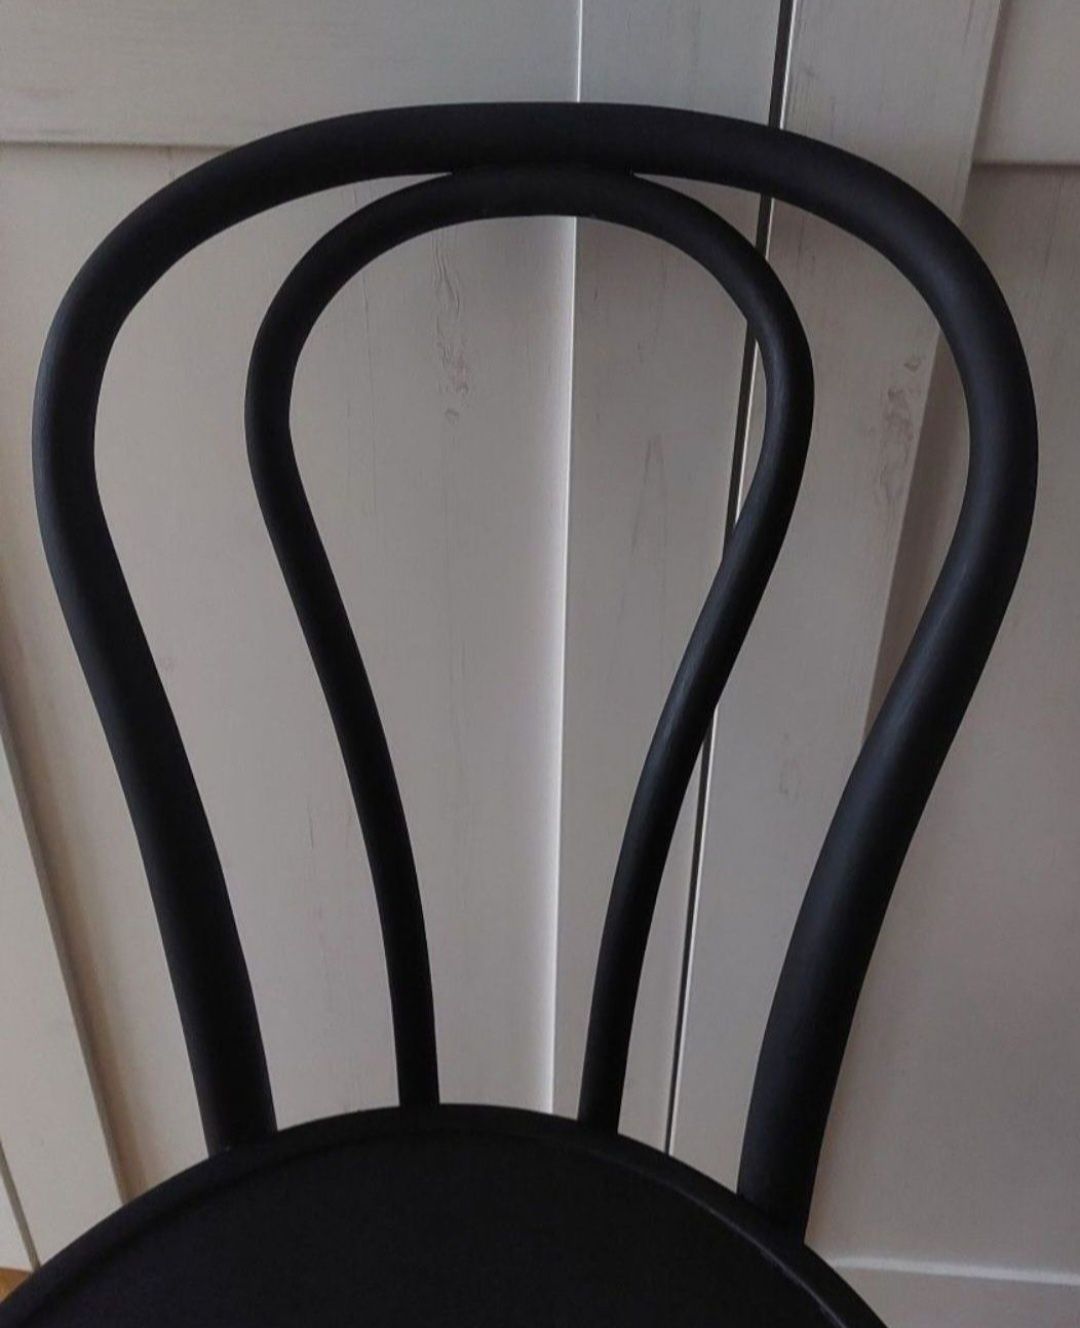 Krzesło w stylu ala Cafe de Paris 2 sztuki